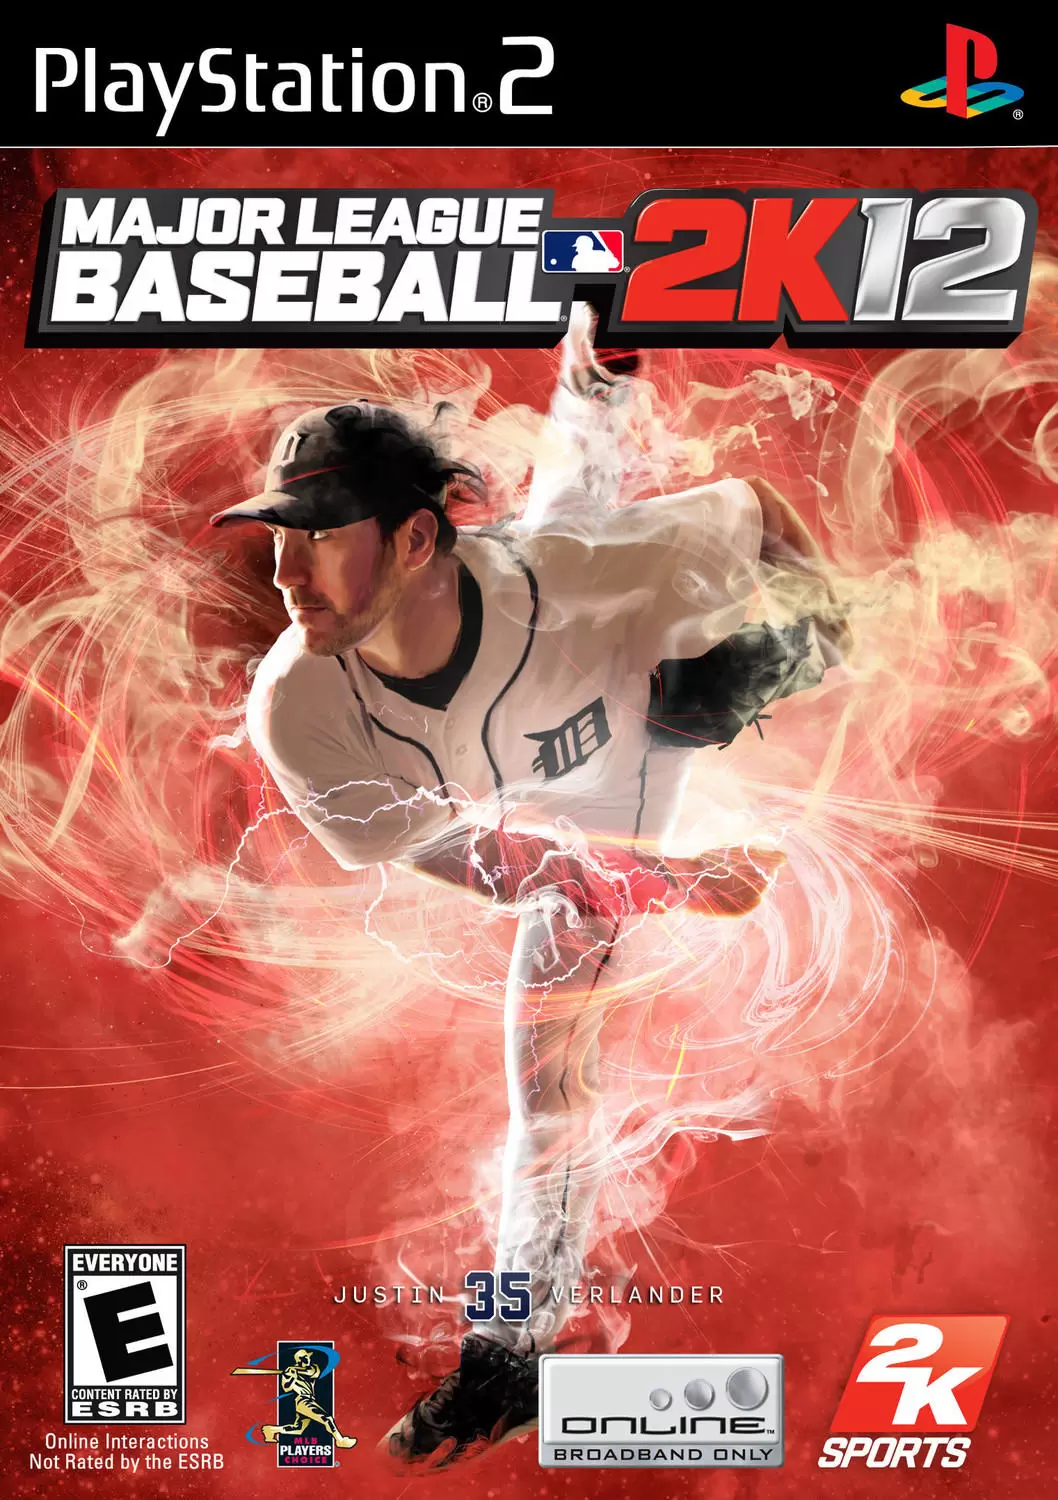 PS2 Games - Major League Baseball 2K12